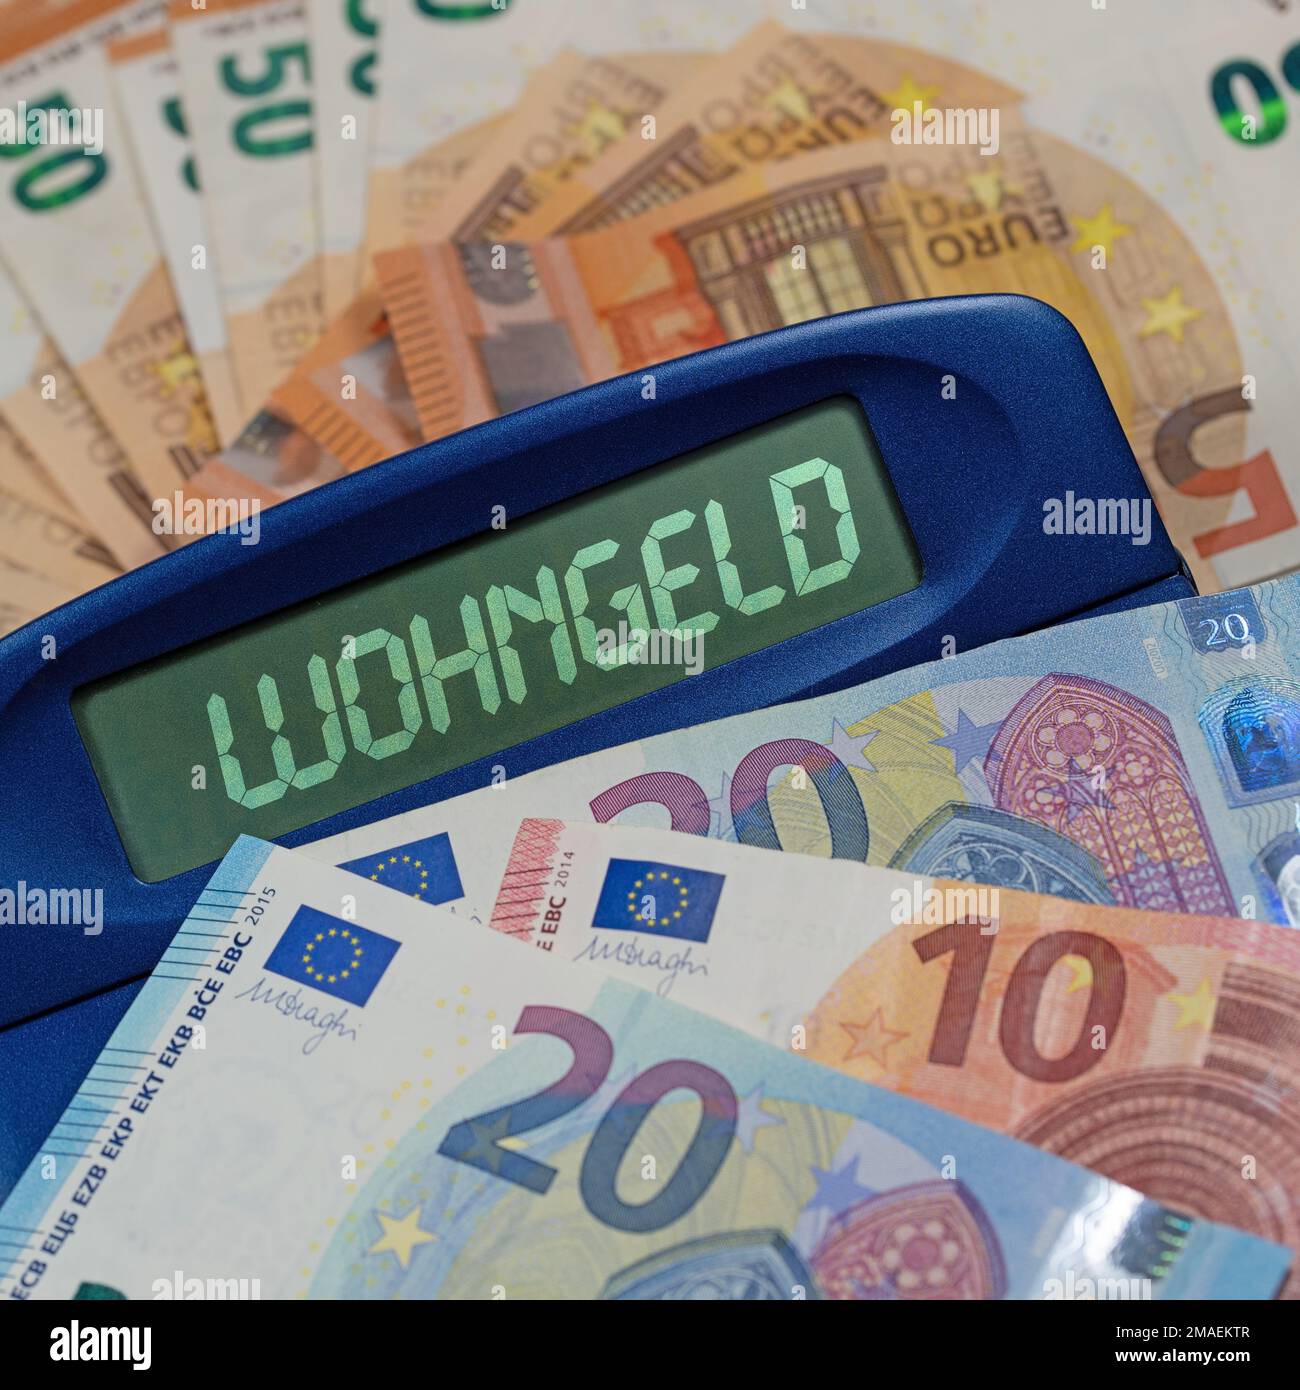 Calculatrice avec inscription « Wohngeld » à l'écran, traduction « Housing Benefit » Banque D'Images